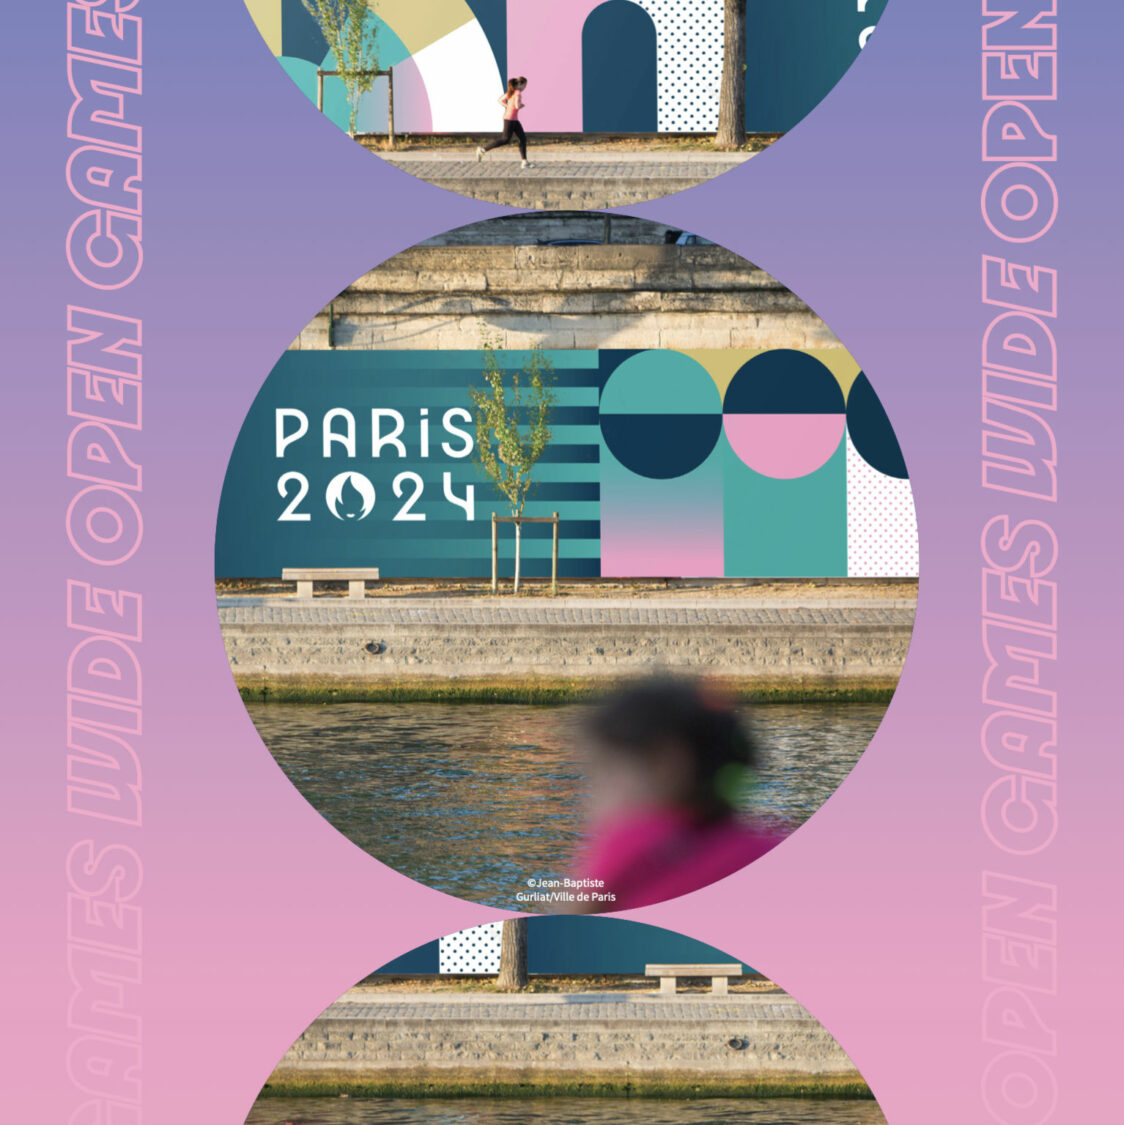 Paris 2024 Visual Identity / Branding, Quelle: paris2024.org